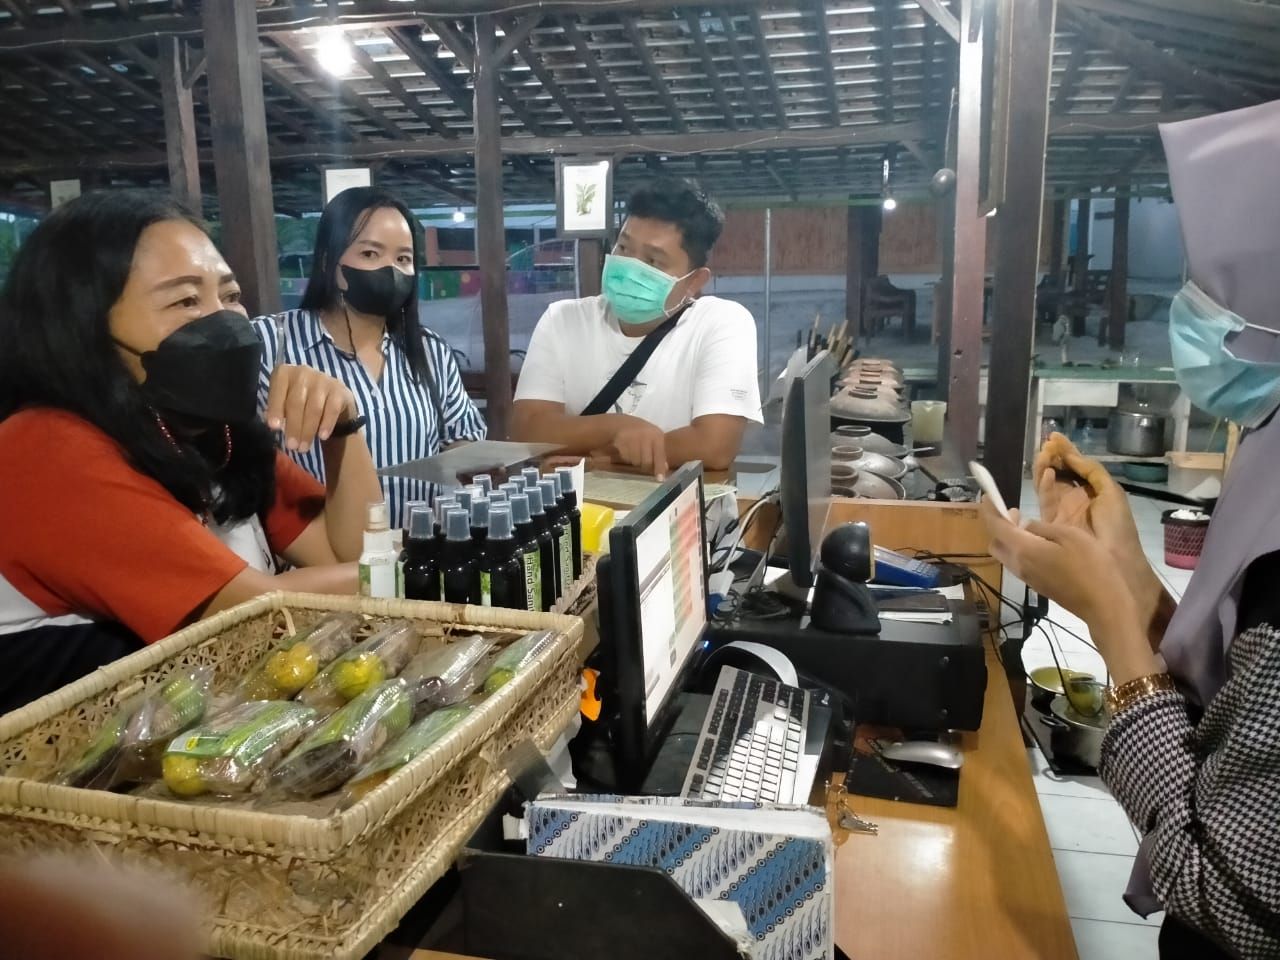 Sejumlah pengunjung sedang memesan jamu yang terbuat dari aneka tanaman obat lokal di tempat wisata eduksi Merapi Farma Herbal Jalan Kaliurang Pakem, Sleman, hari Jumat, 14 Mei 2021. 